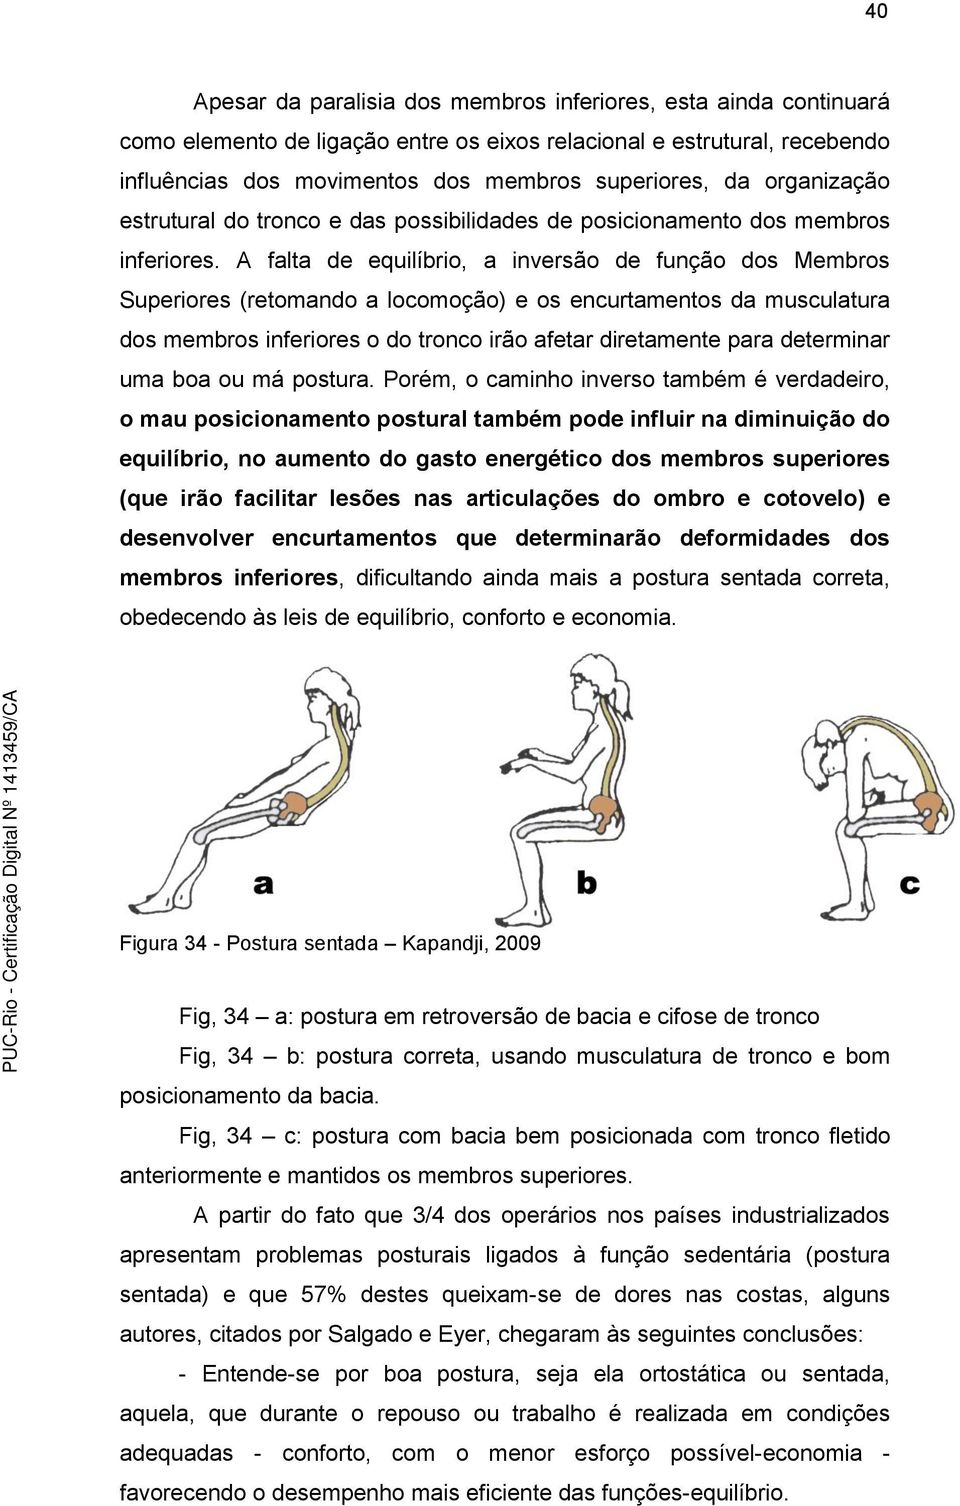 A falta de equilíbrio, a inversão de função dos Membros Superiores (retomando a locomoção) e os encurtamentos da musculatura dos membros inferiores o do tronco irão afetar diretamente para determinar